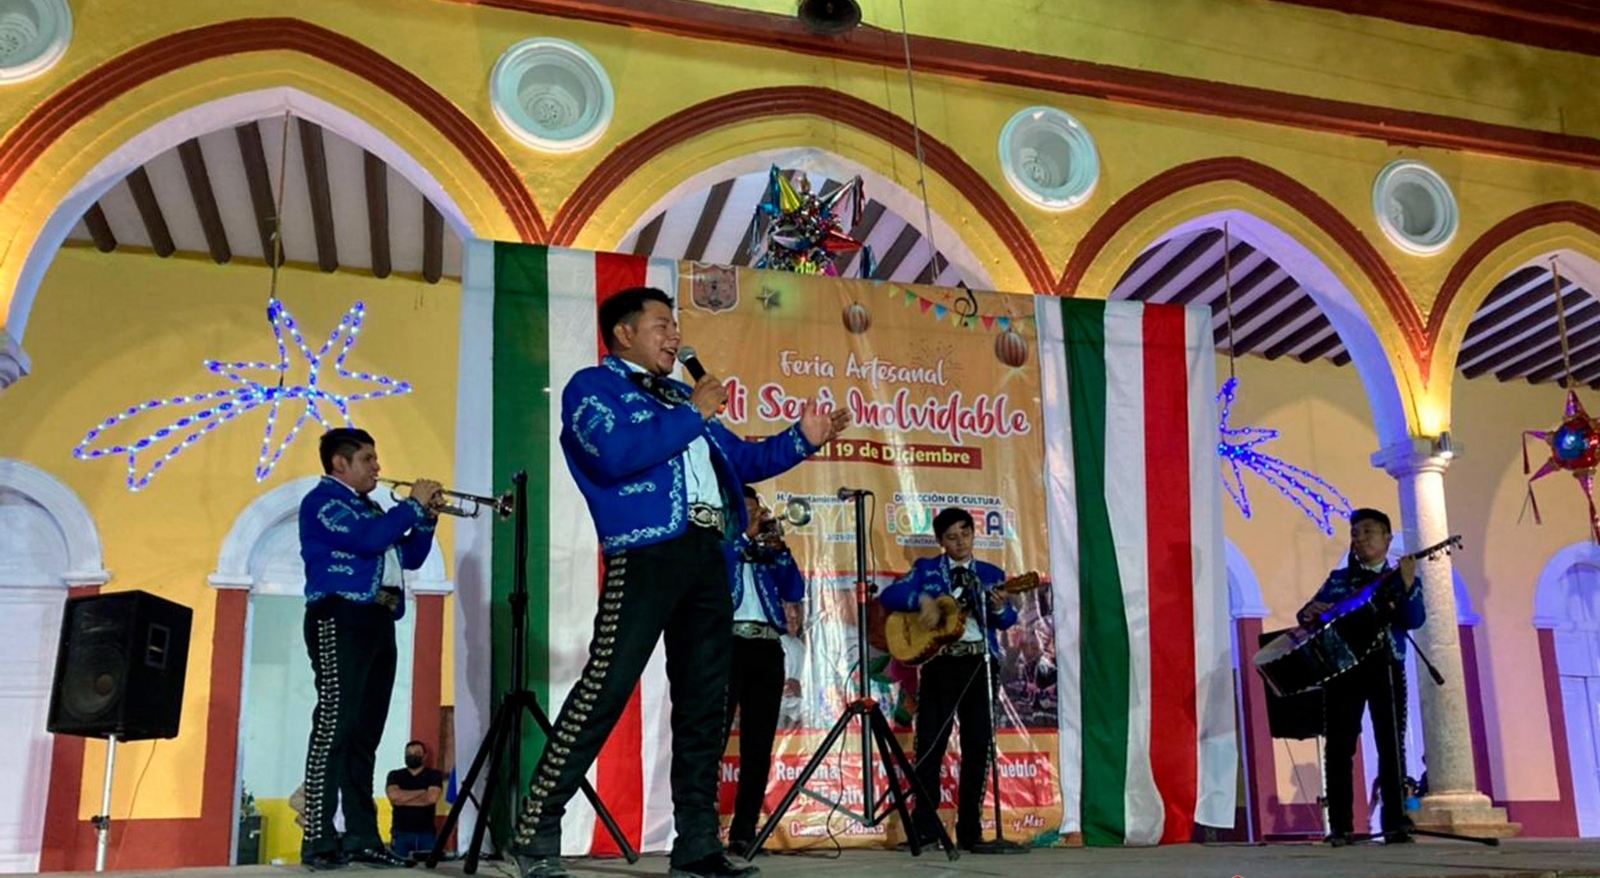 Feria artesanal "Mi Seyé Inolvidable" dedica su segundo día a la música de mariachi